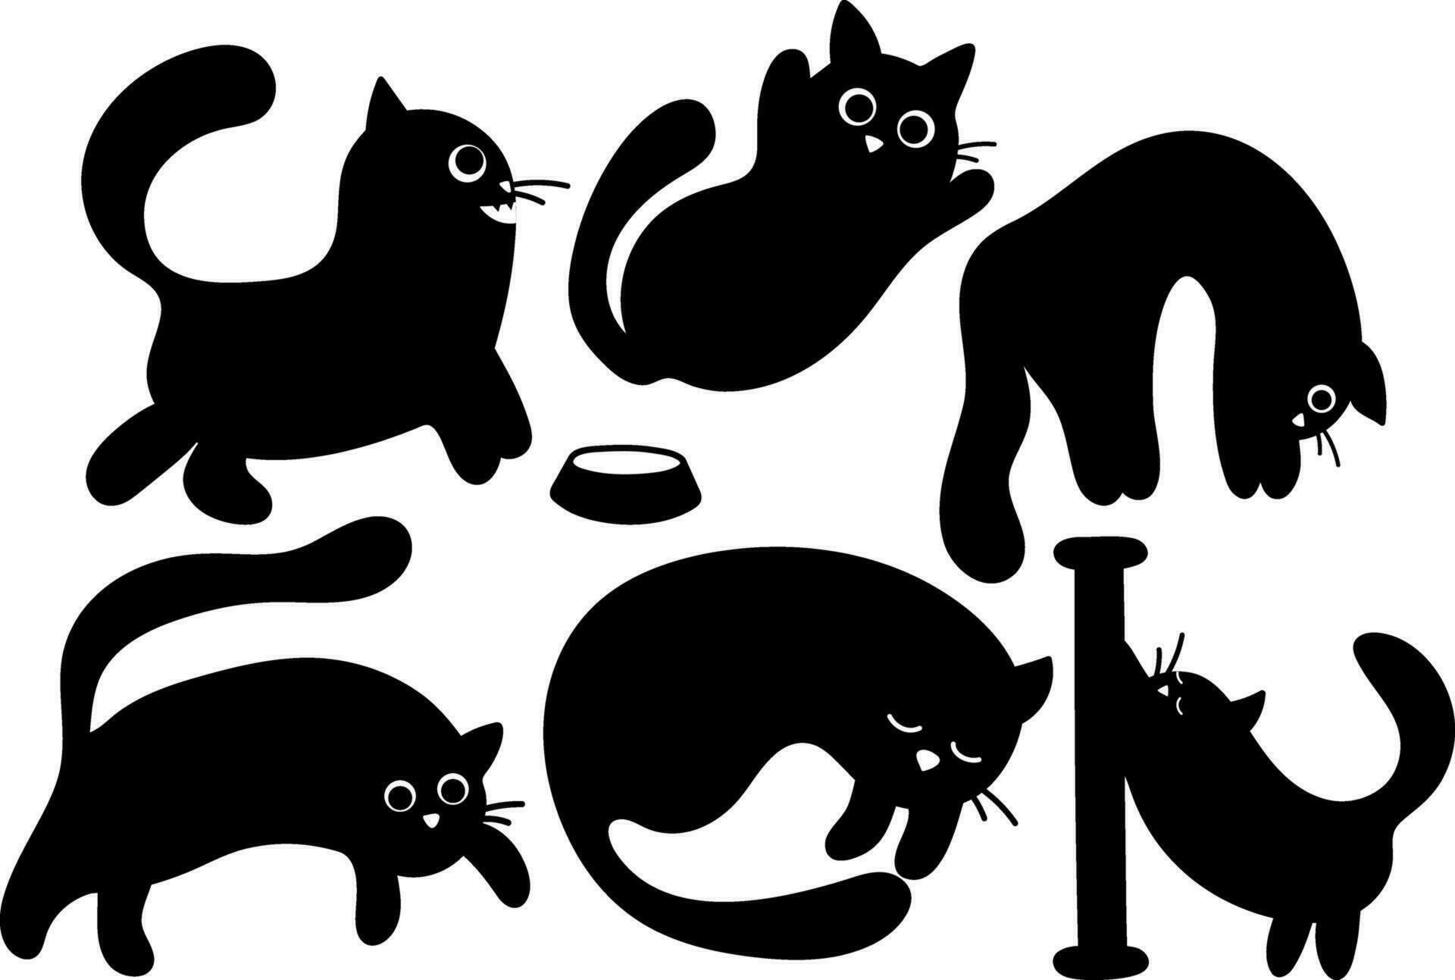 samling av vektor klistermärken av söt svart silhuetter av katter